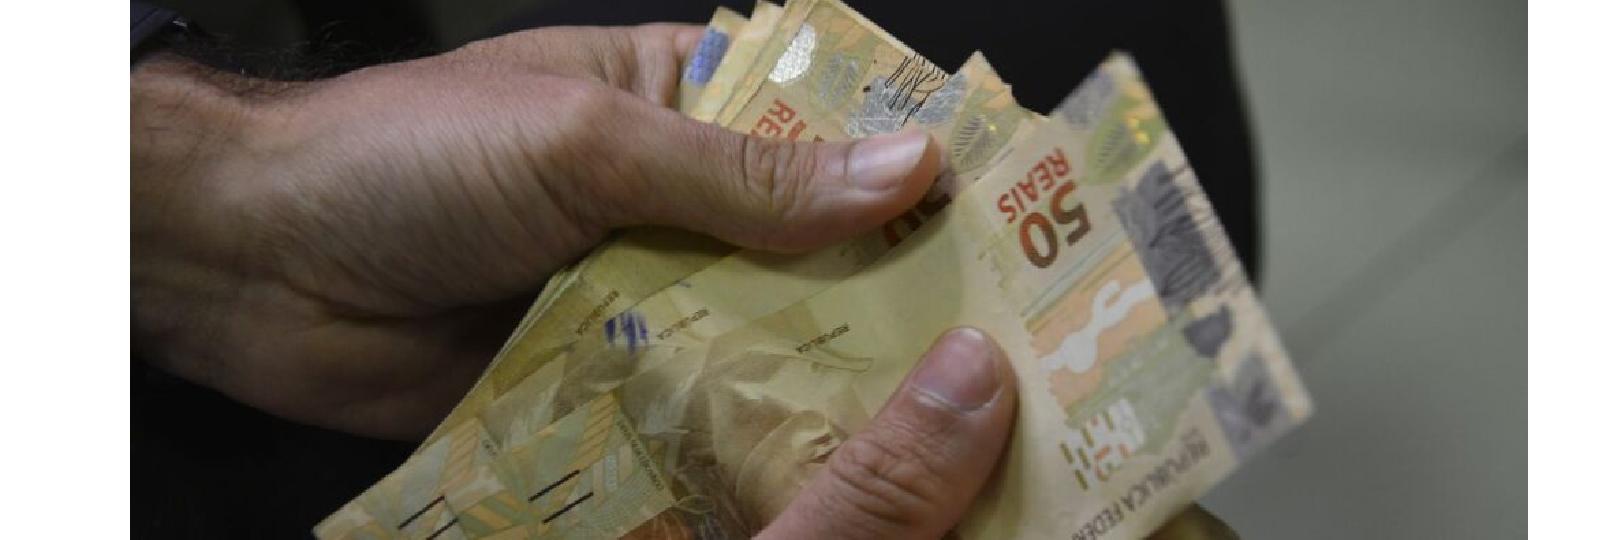 Prefeitura de São José dos Cordeiros anuncia pagamento dos servidores referente ao mês julho